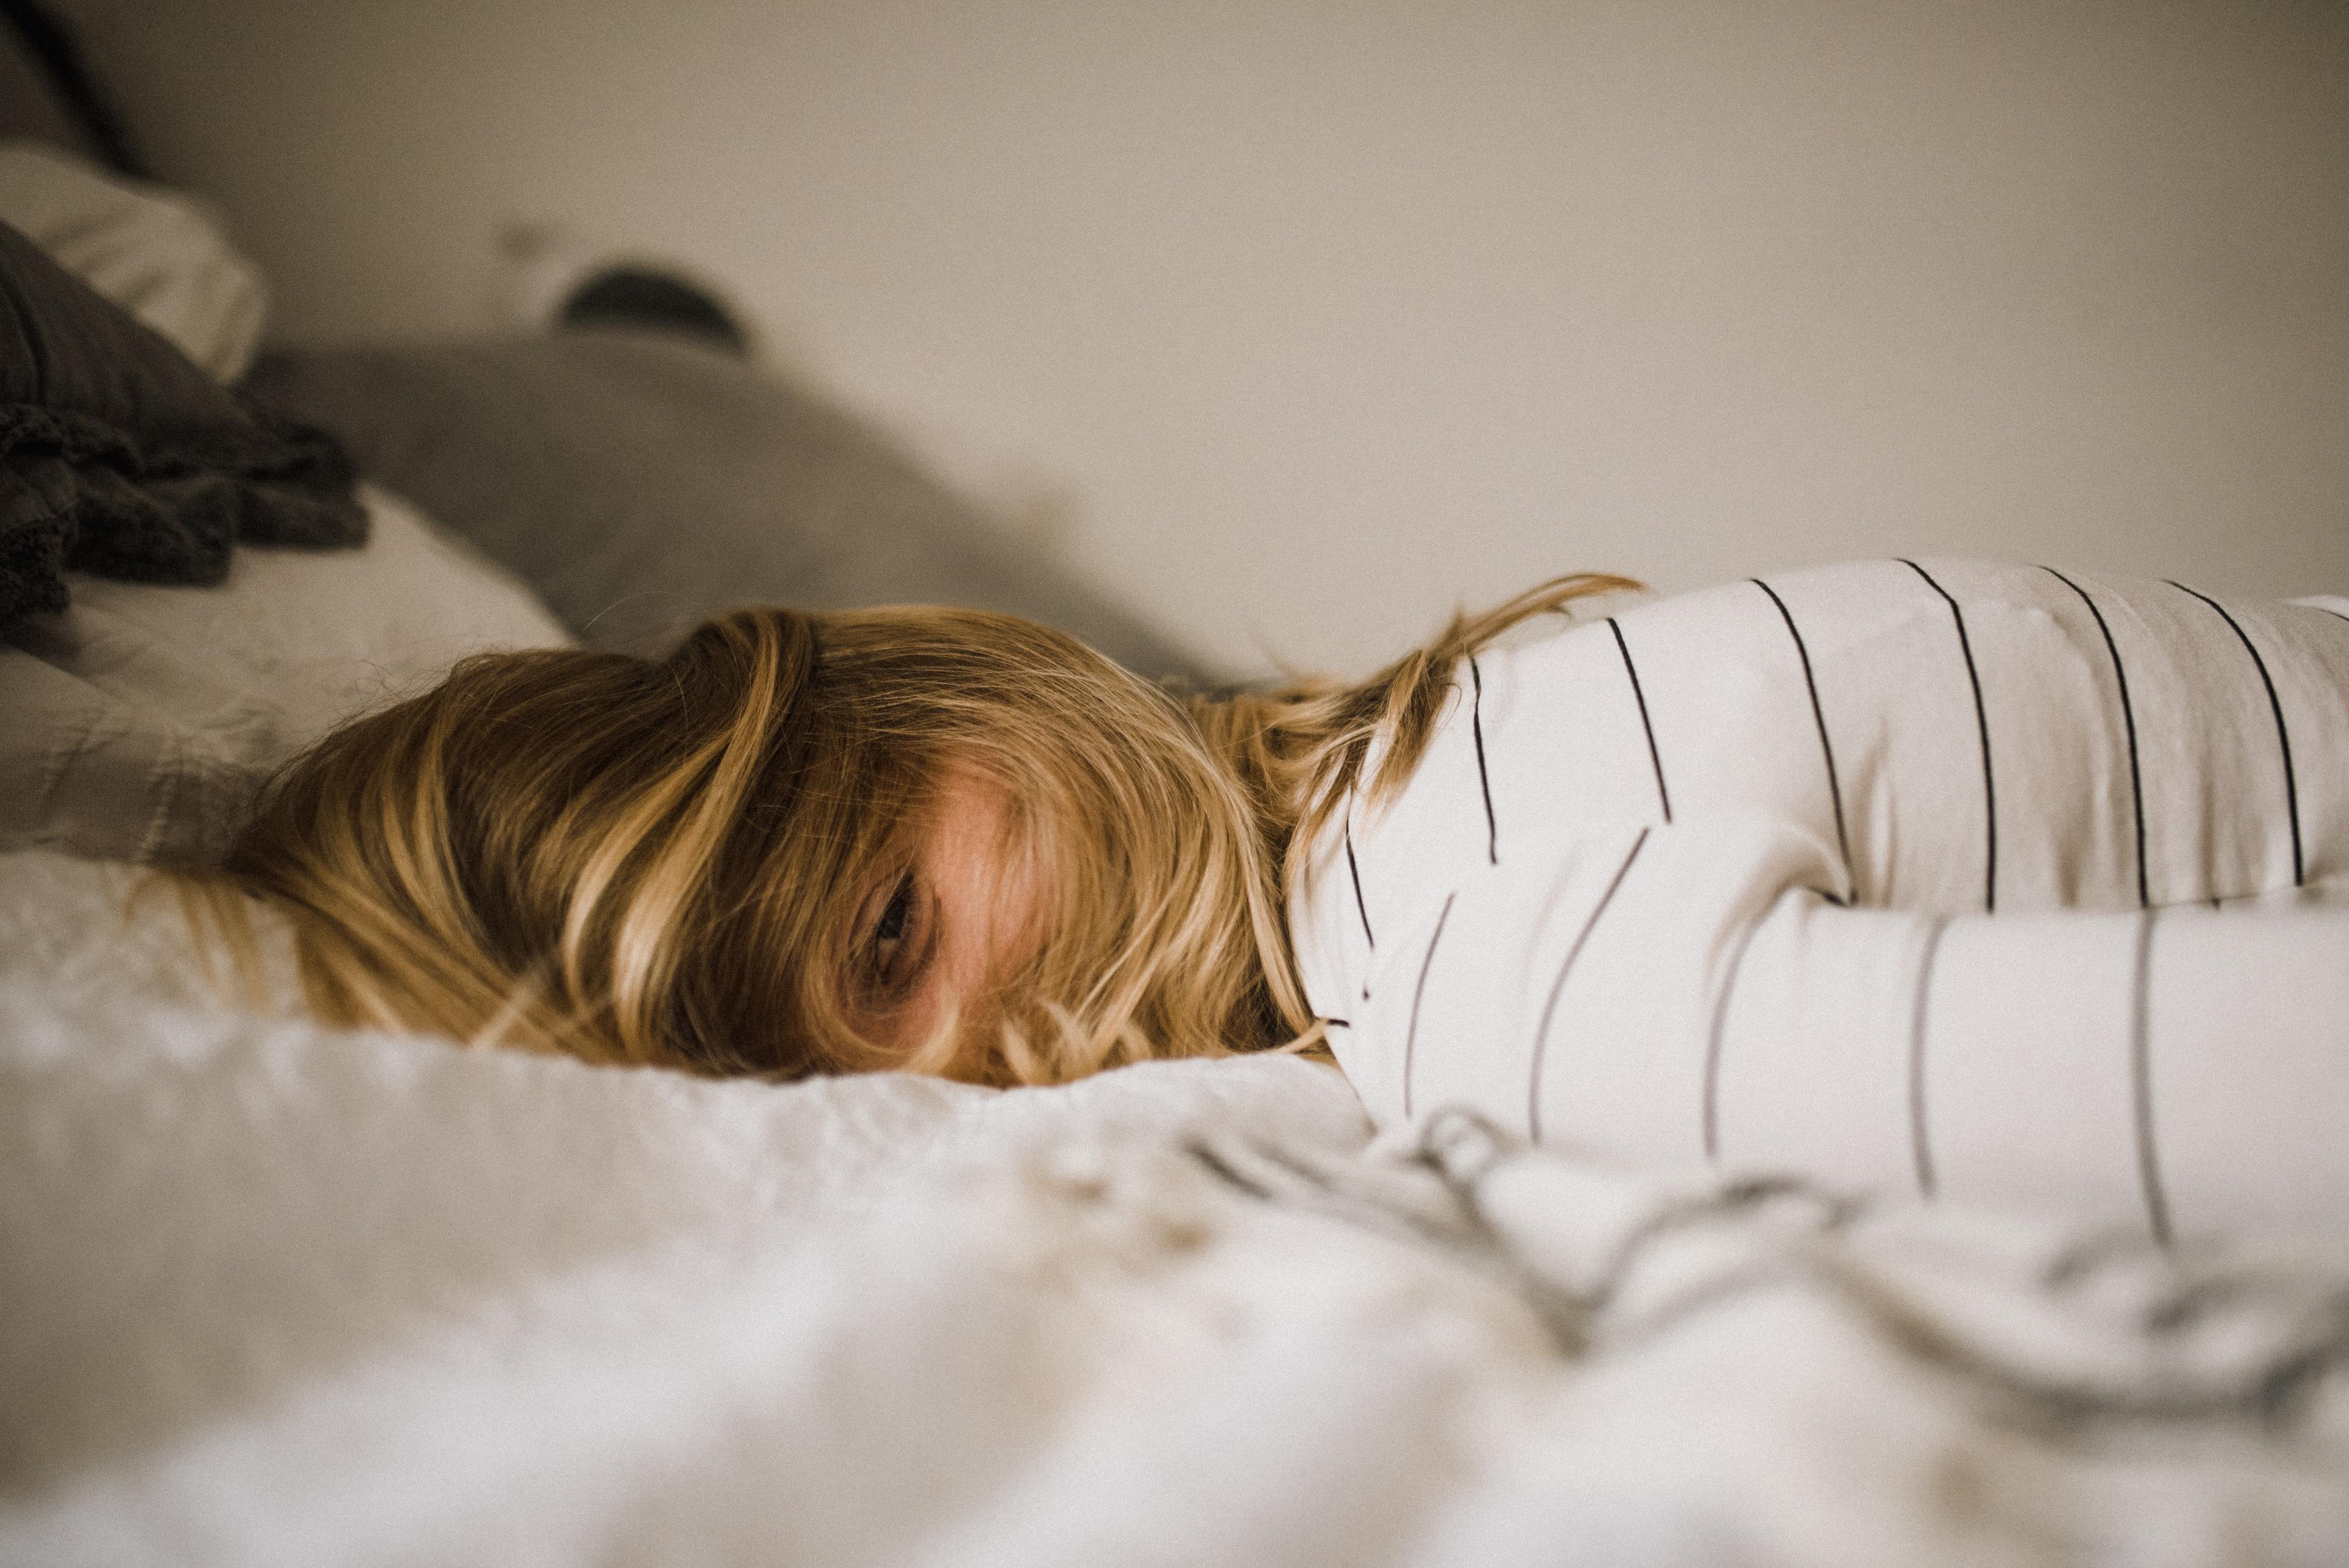 Zaburzenia snu - przyczyny, objawy i leczenie. Problemy ze snem? Skutki i objawy bezsenności 